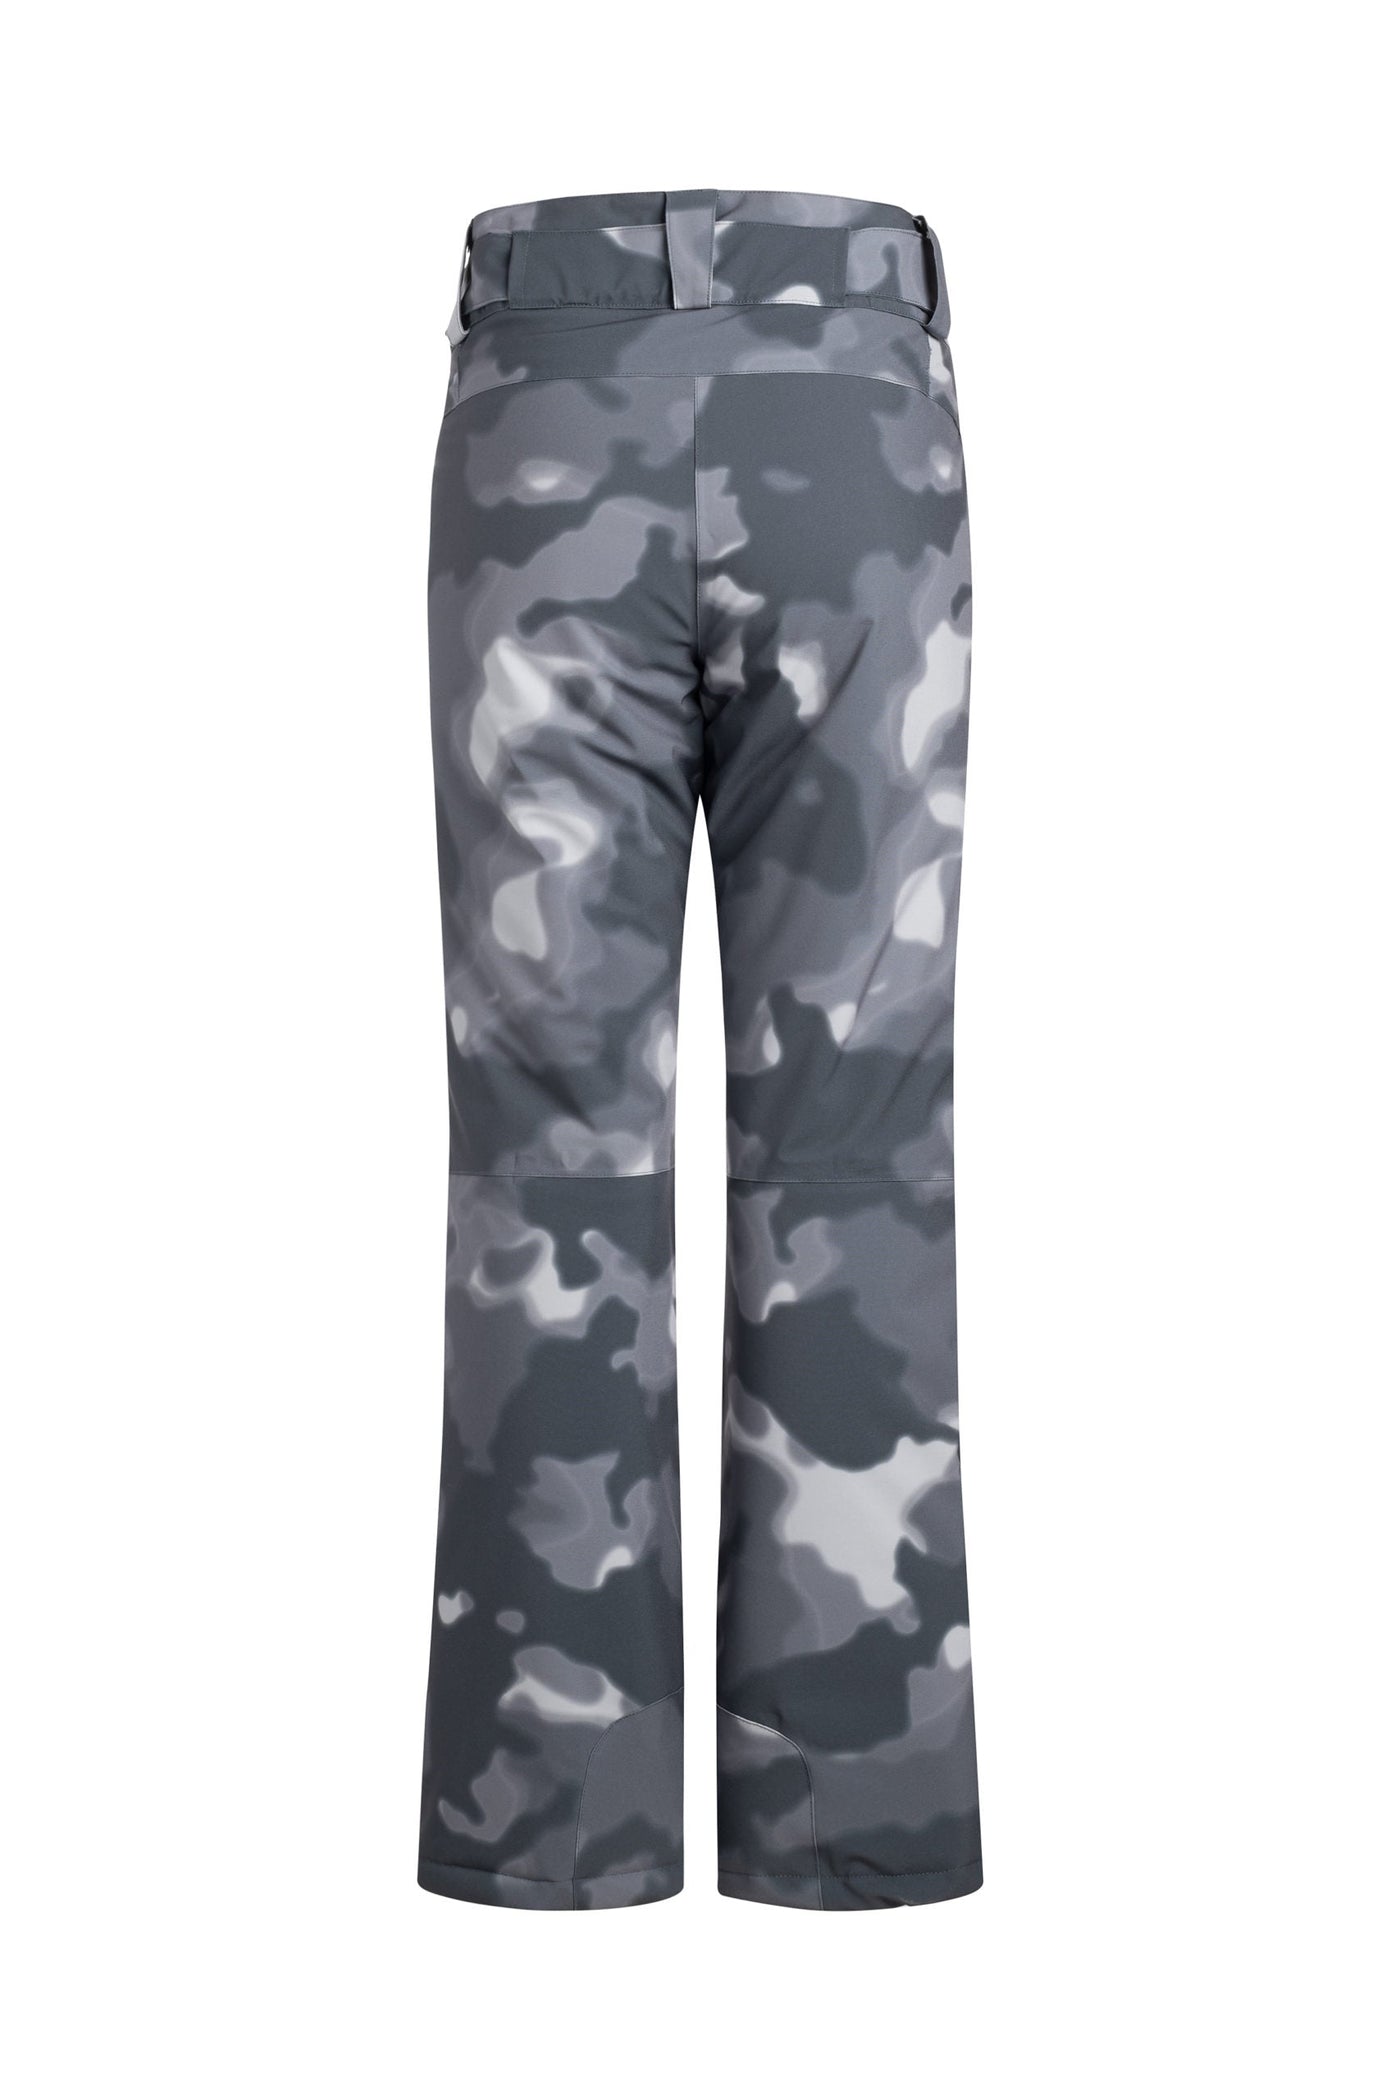 Pantalon de neige, pantalon de snowboard camouflage pour femme